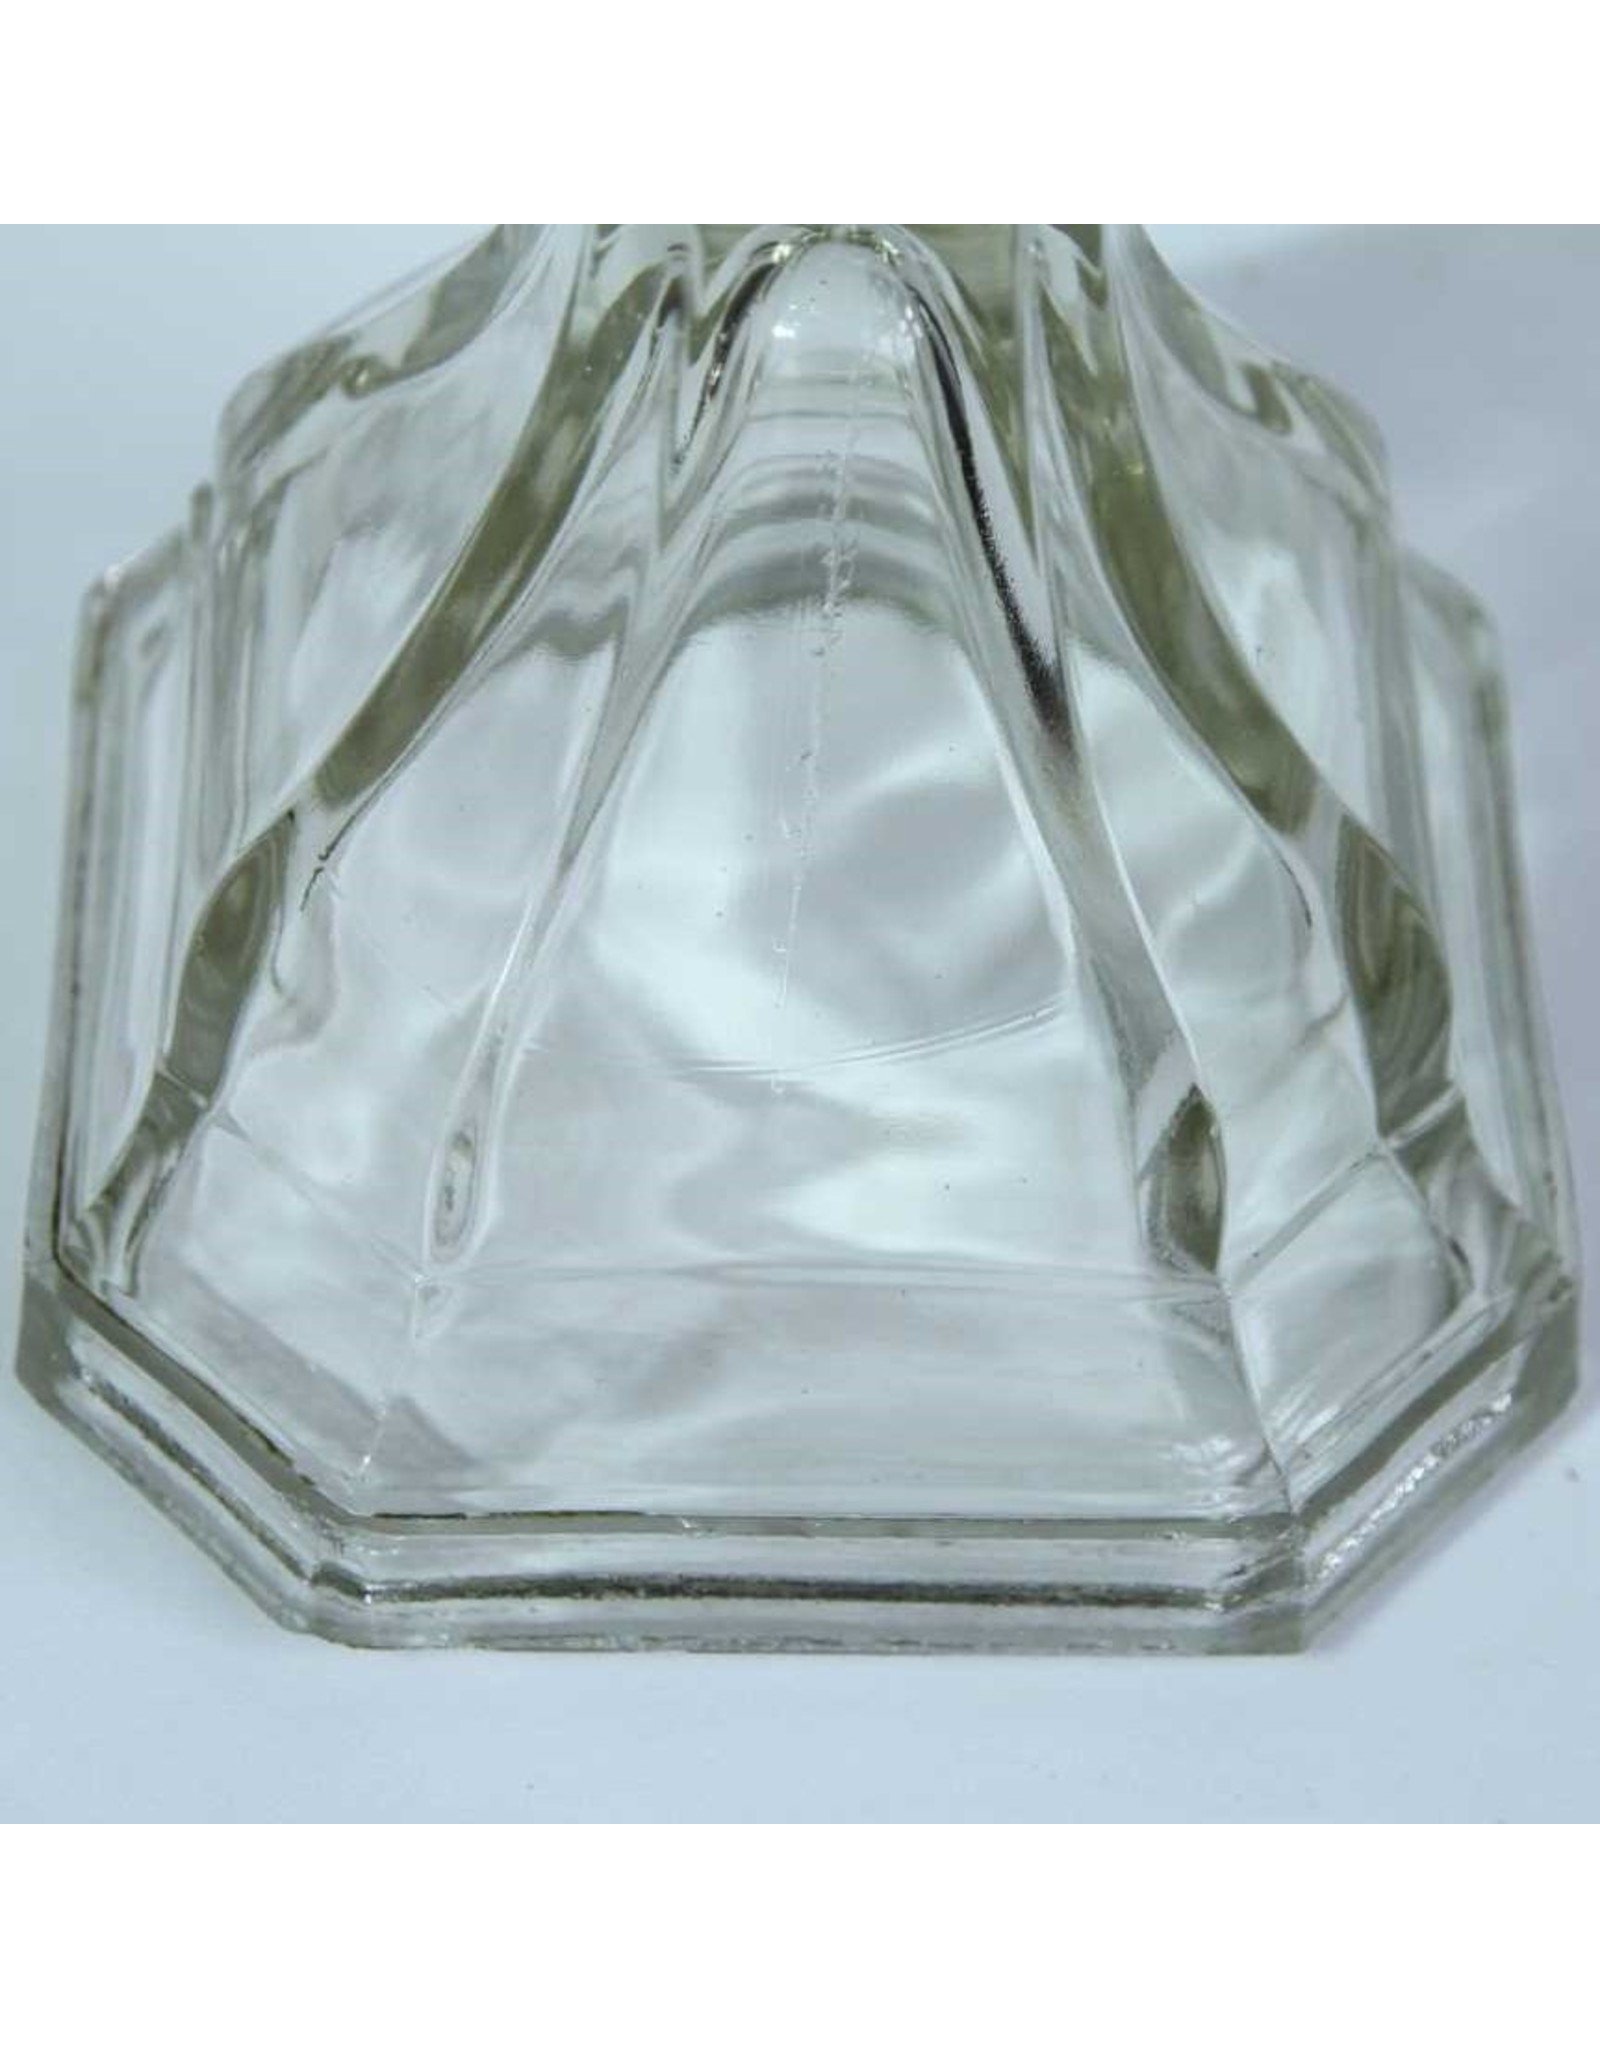 Glass oil lamp base